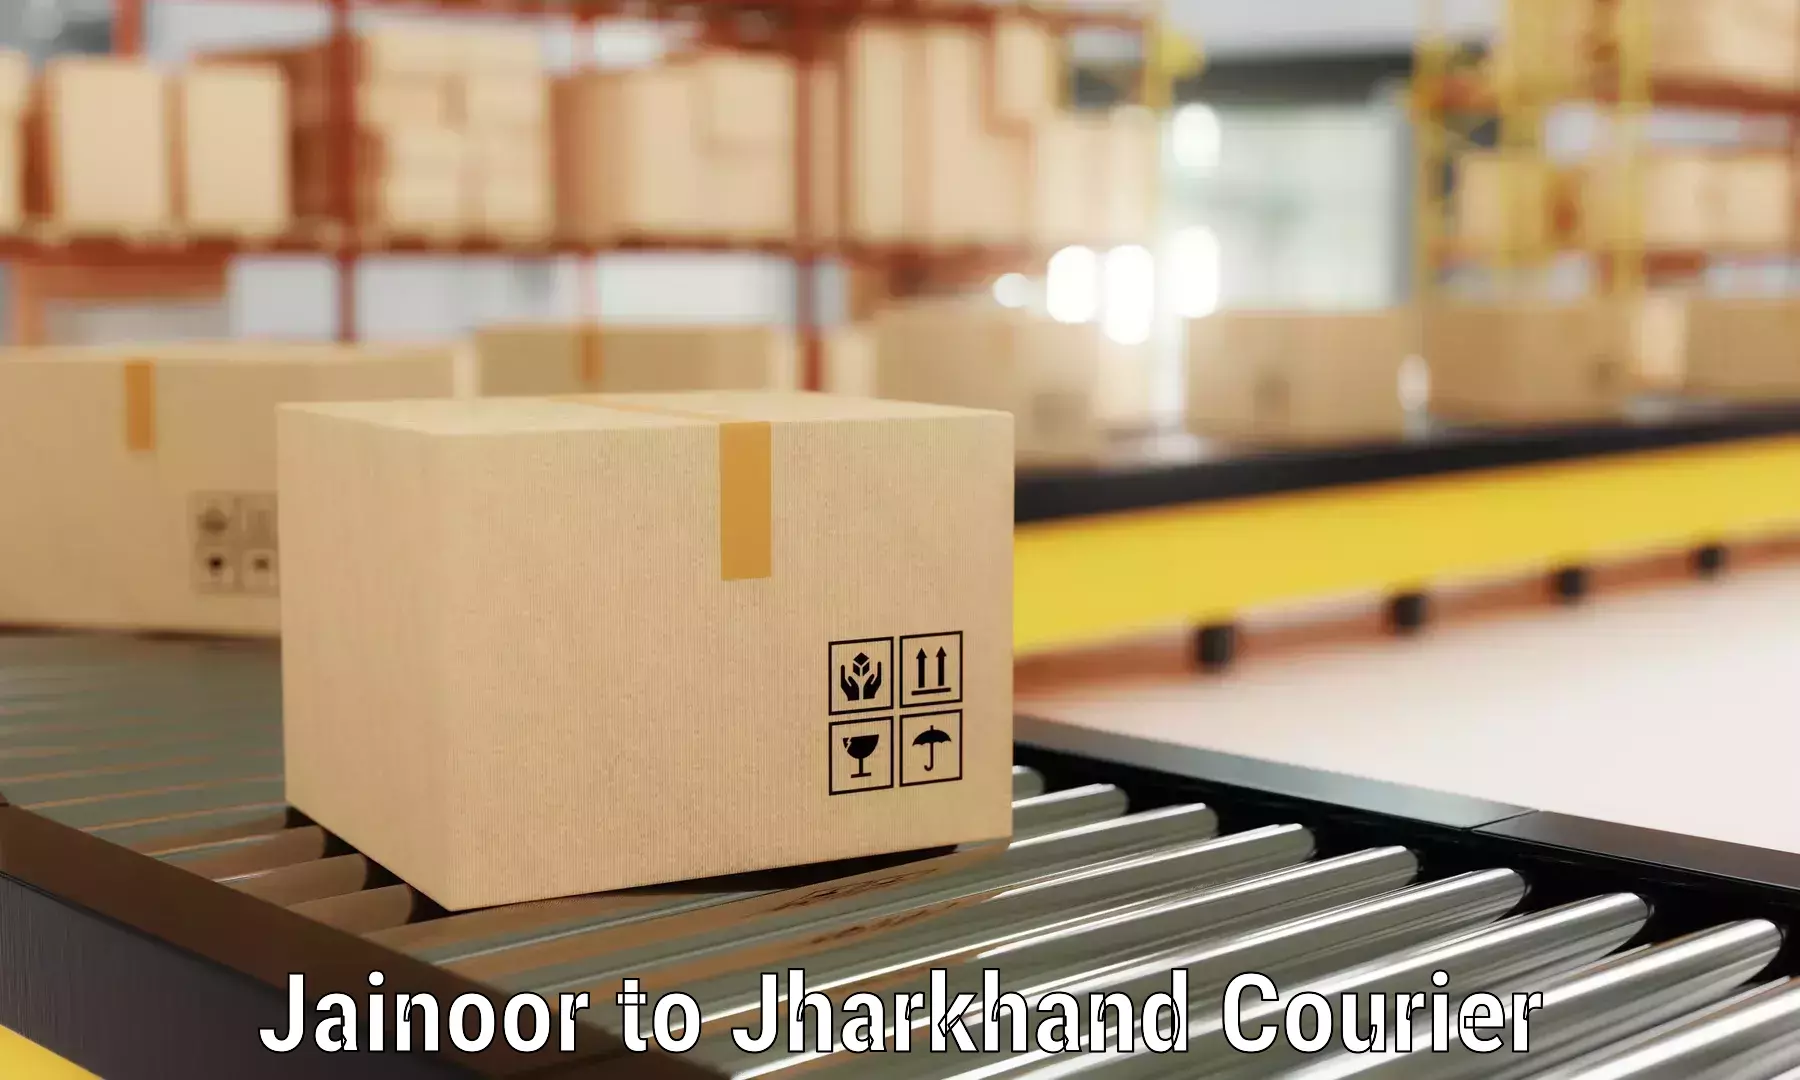 Household goods transporters Jainoor to Jharkhand